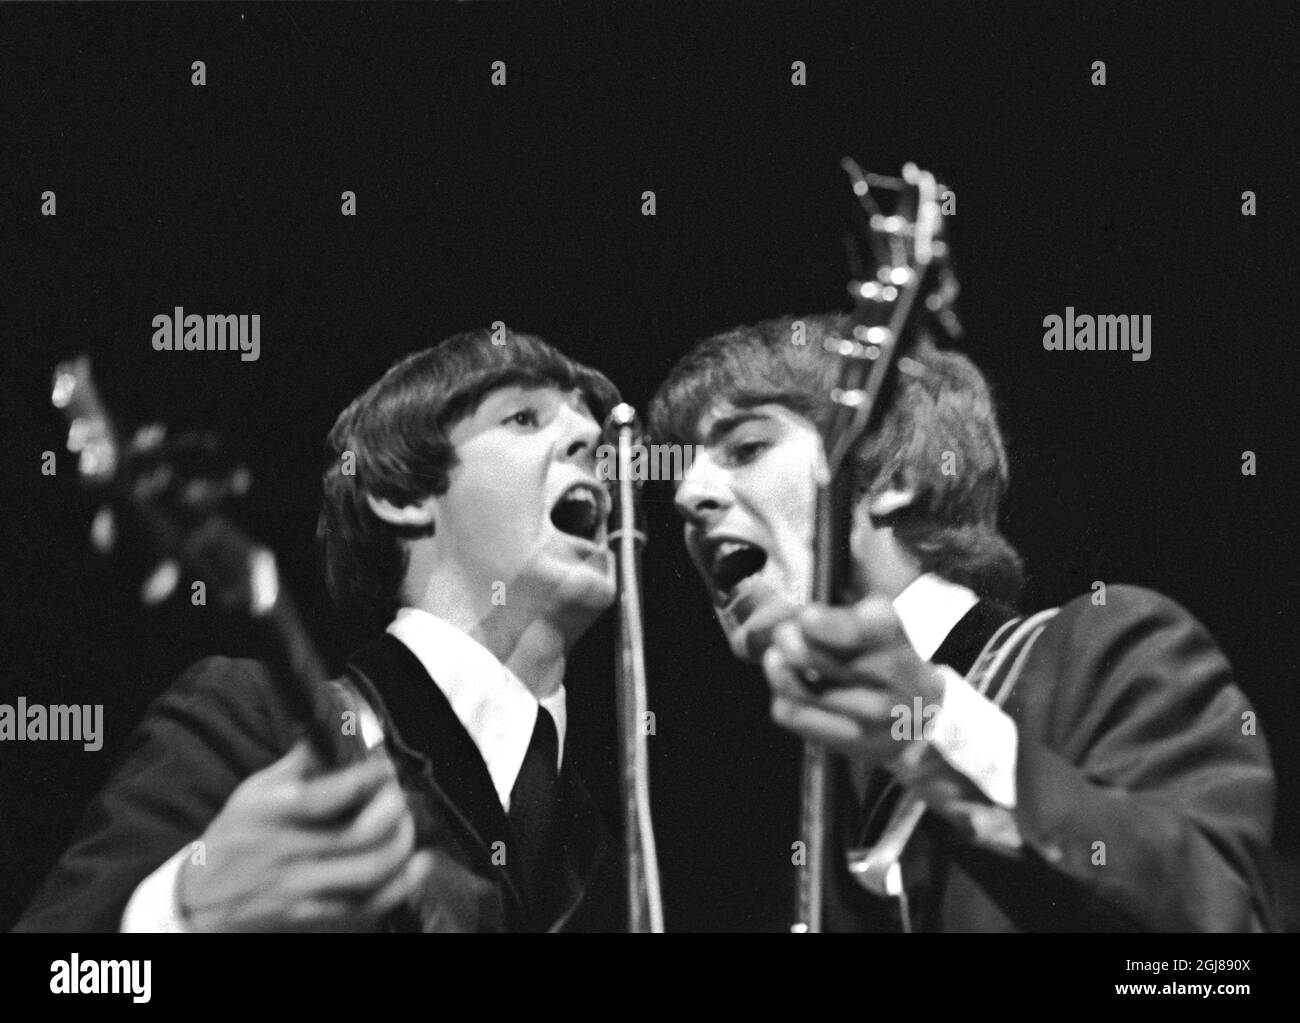 STOCKHOLM 1964-07-28 *POUR VOS DOSSIERS* Paul McCartney et George Harrison des Beatles sont vus lors d'un concert au stade de glace de Johanneshov à Stockholm, Suède, 28 juillet 1964 Foto: Folke Hellberg / DN / TT / Kod: 23 **OUT SWEDEN OUT** Banque D'Images